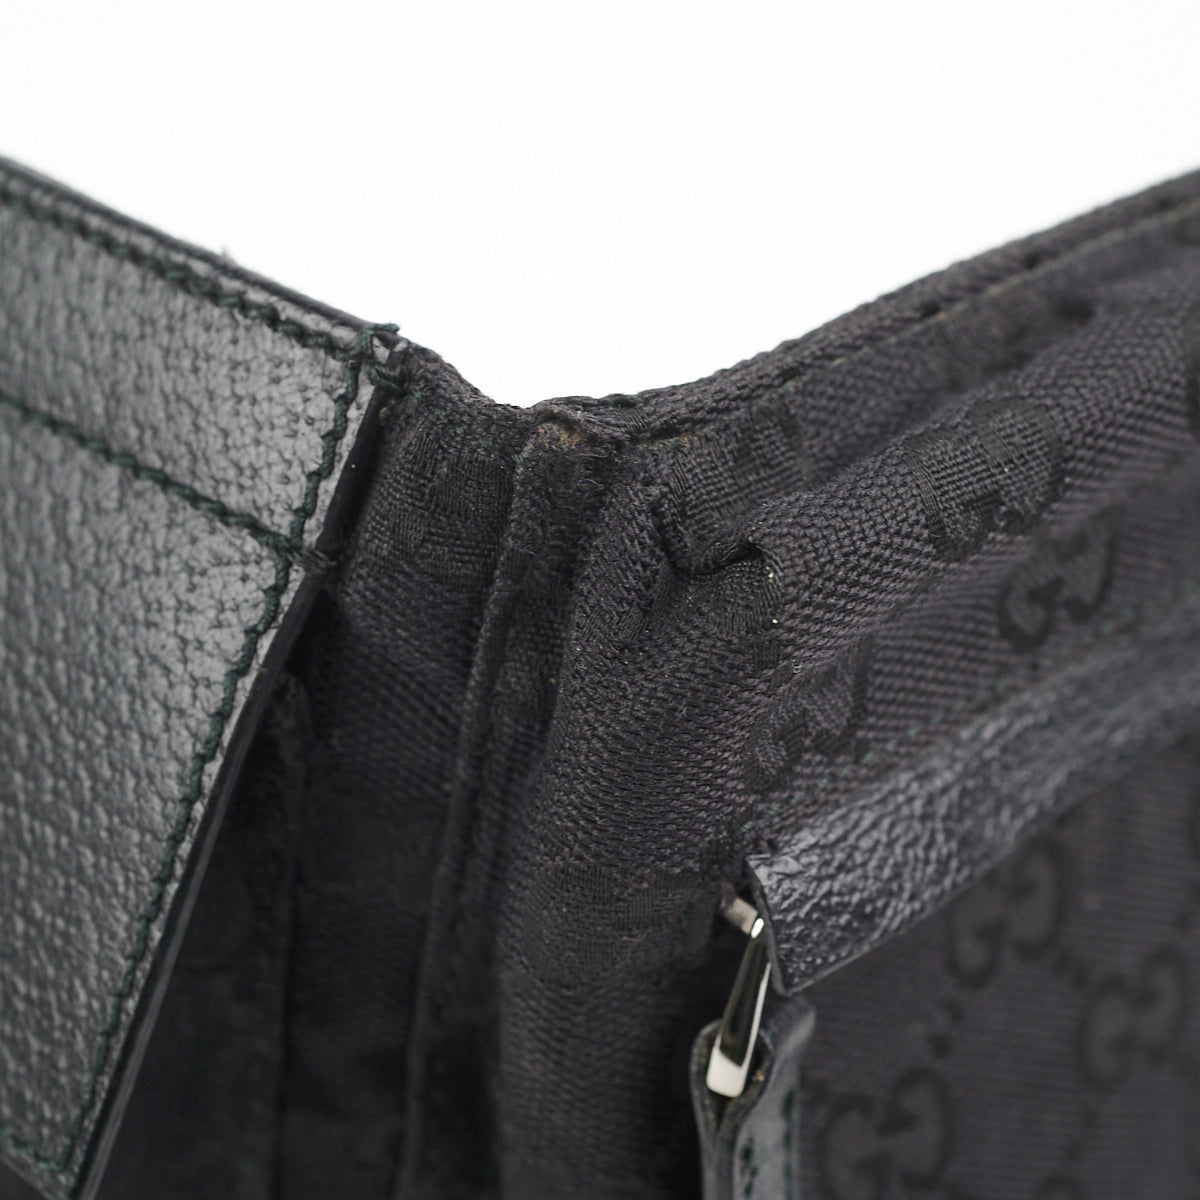 Gucci GG Canvas Waist Pouch - Black Waist Bags, Handbags - GUC1315496